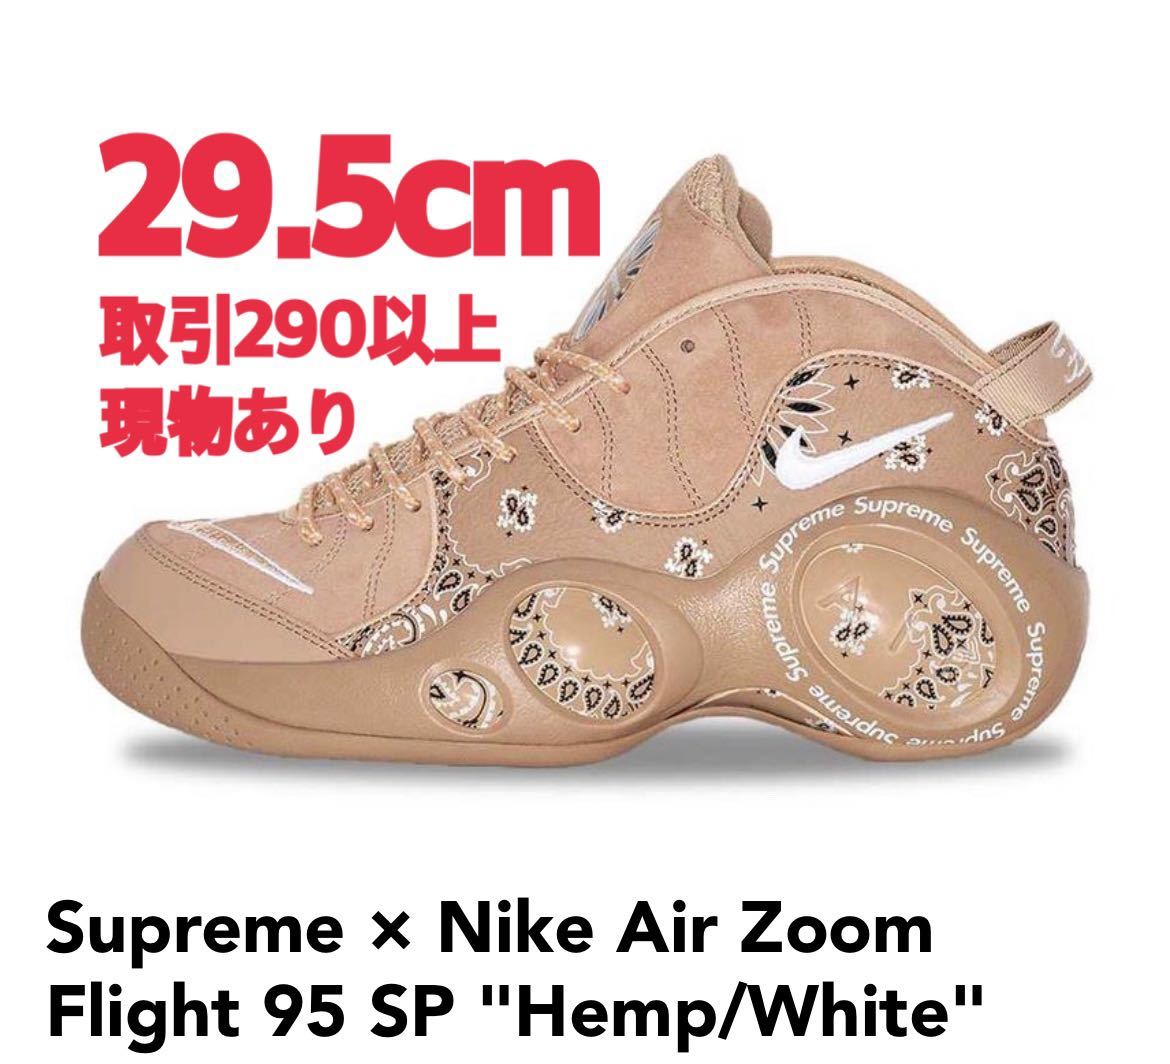 一番の贈り物 Supreme×Nike Air Zoom ズーム AIR Flight 95 ZOOM 29.5 